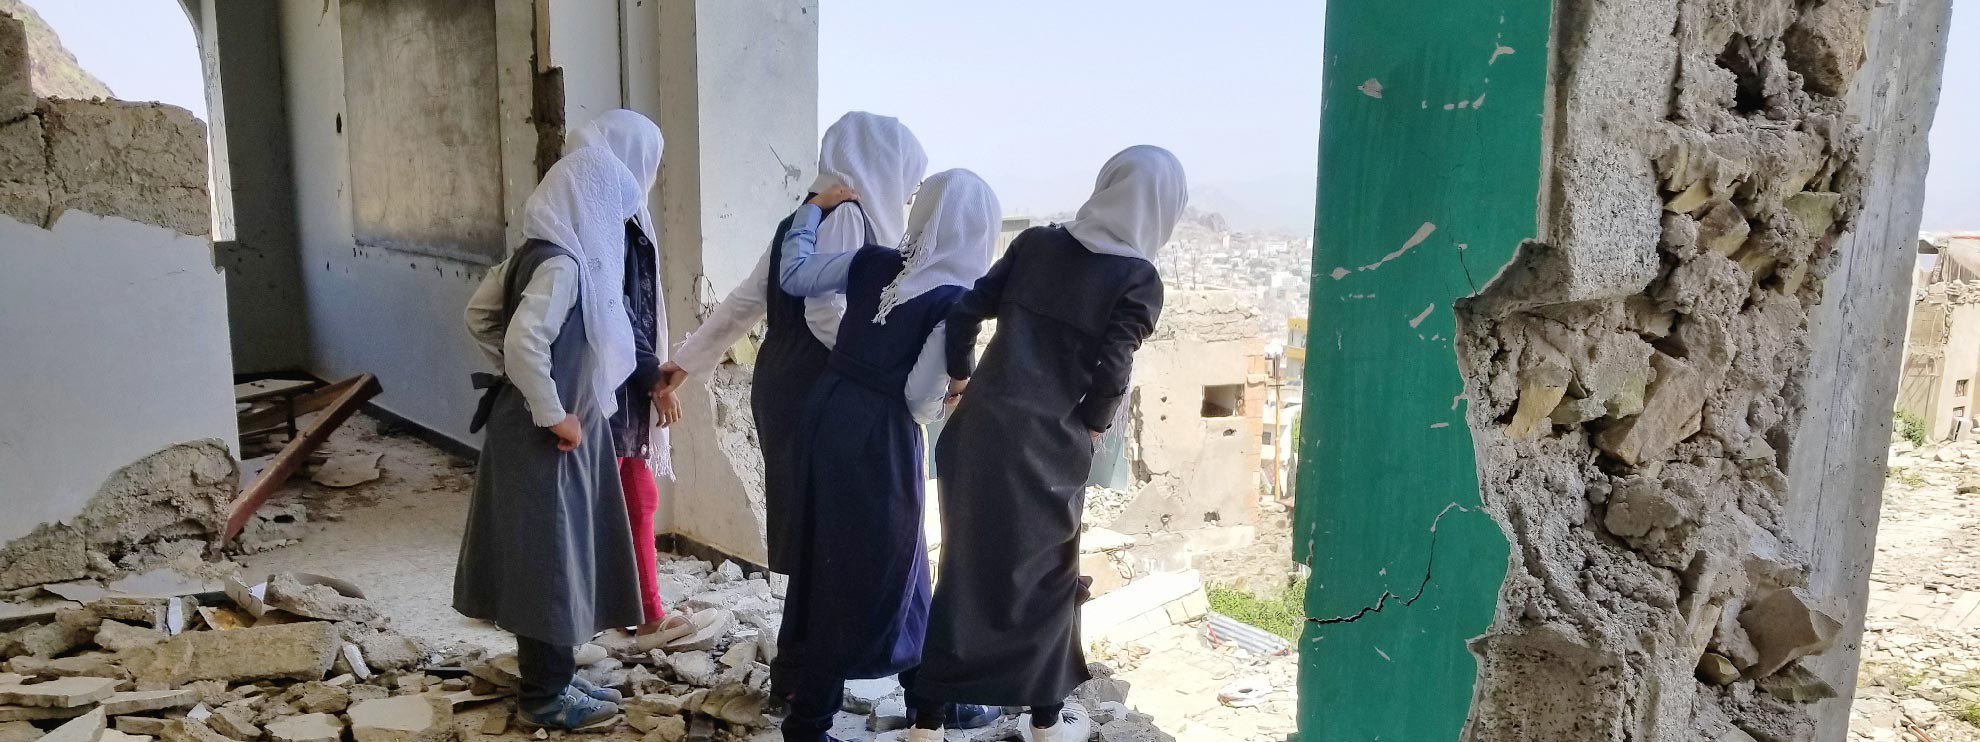 Des écolières découvrent leur école détruite, Taiz, octobre 2018. ©  anasalhajj / shutterstock.com